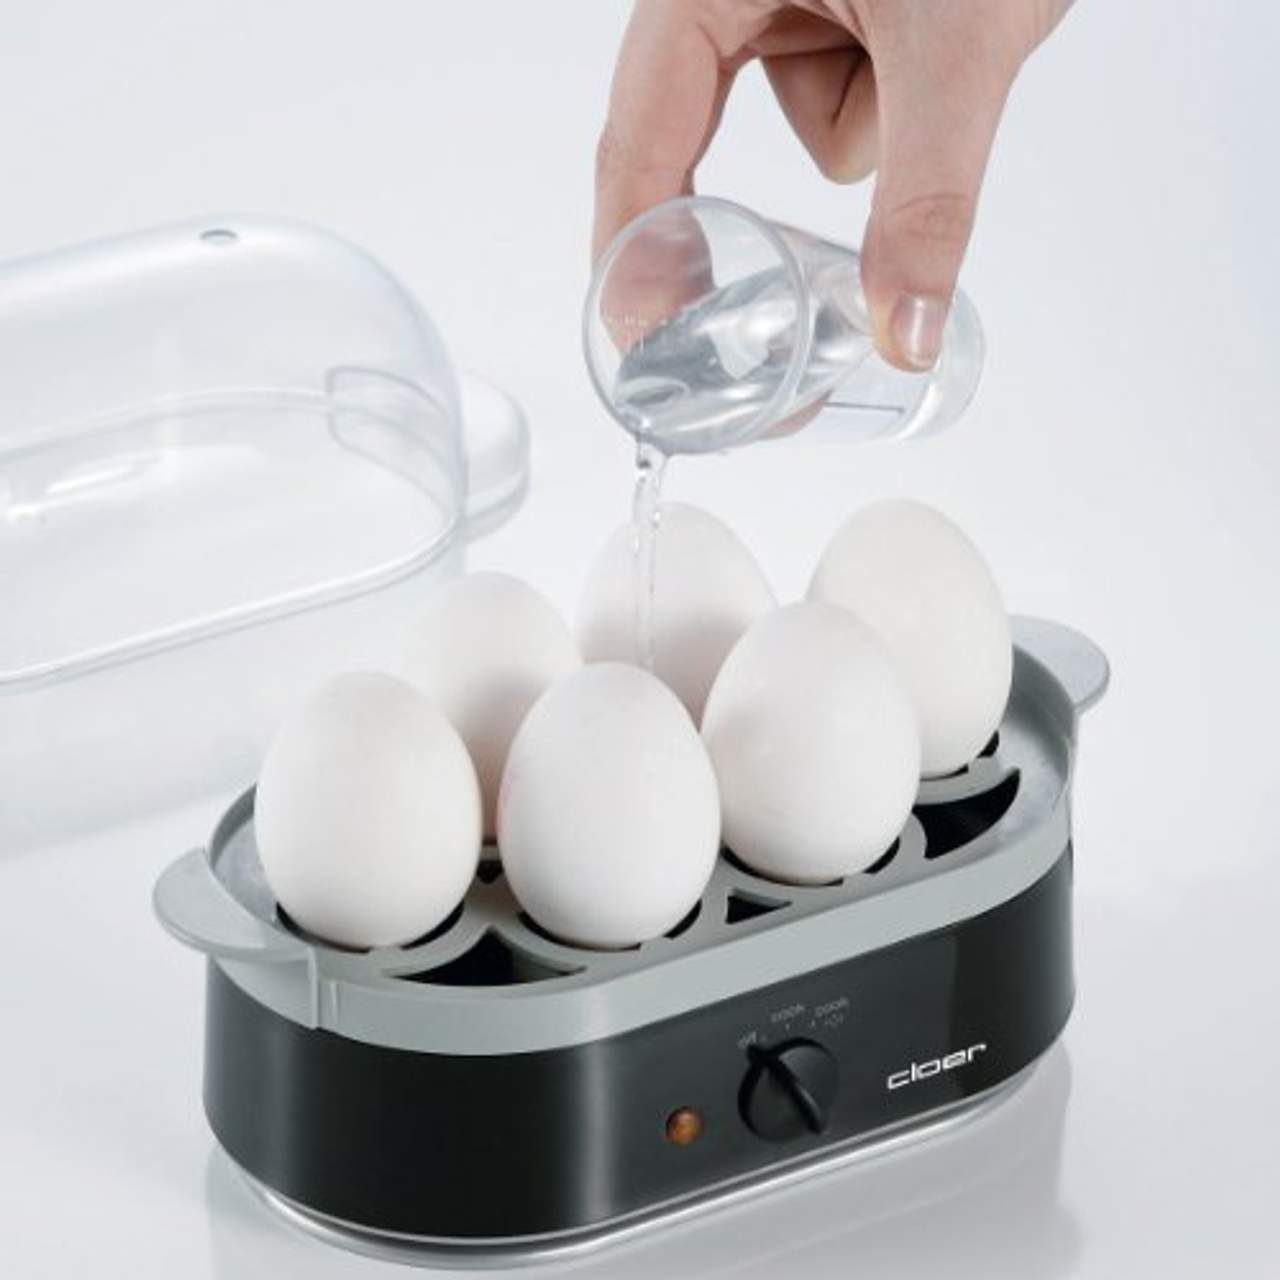 Cloer 6090 Eierkocher mit akustischer Fertigmeldung